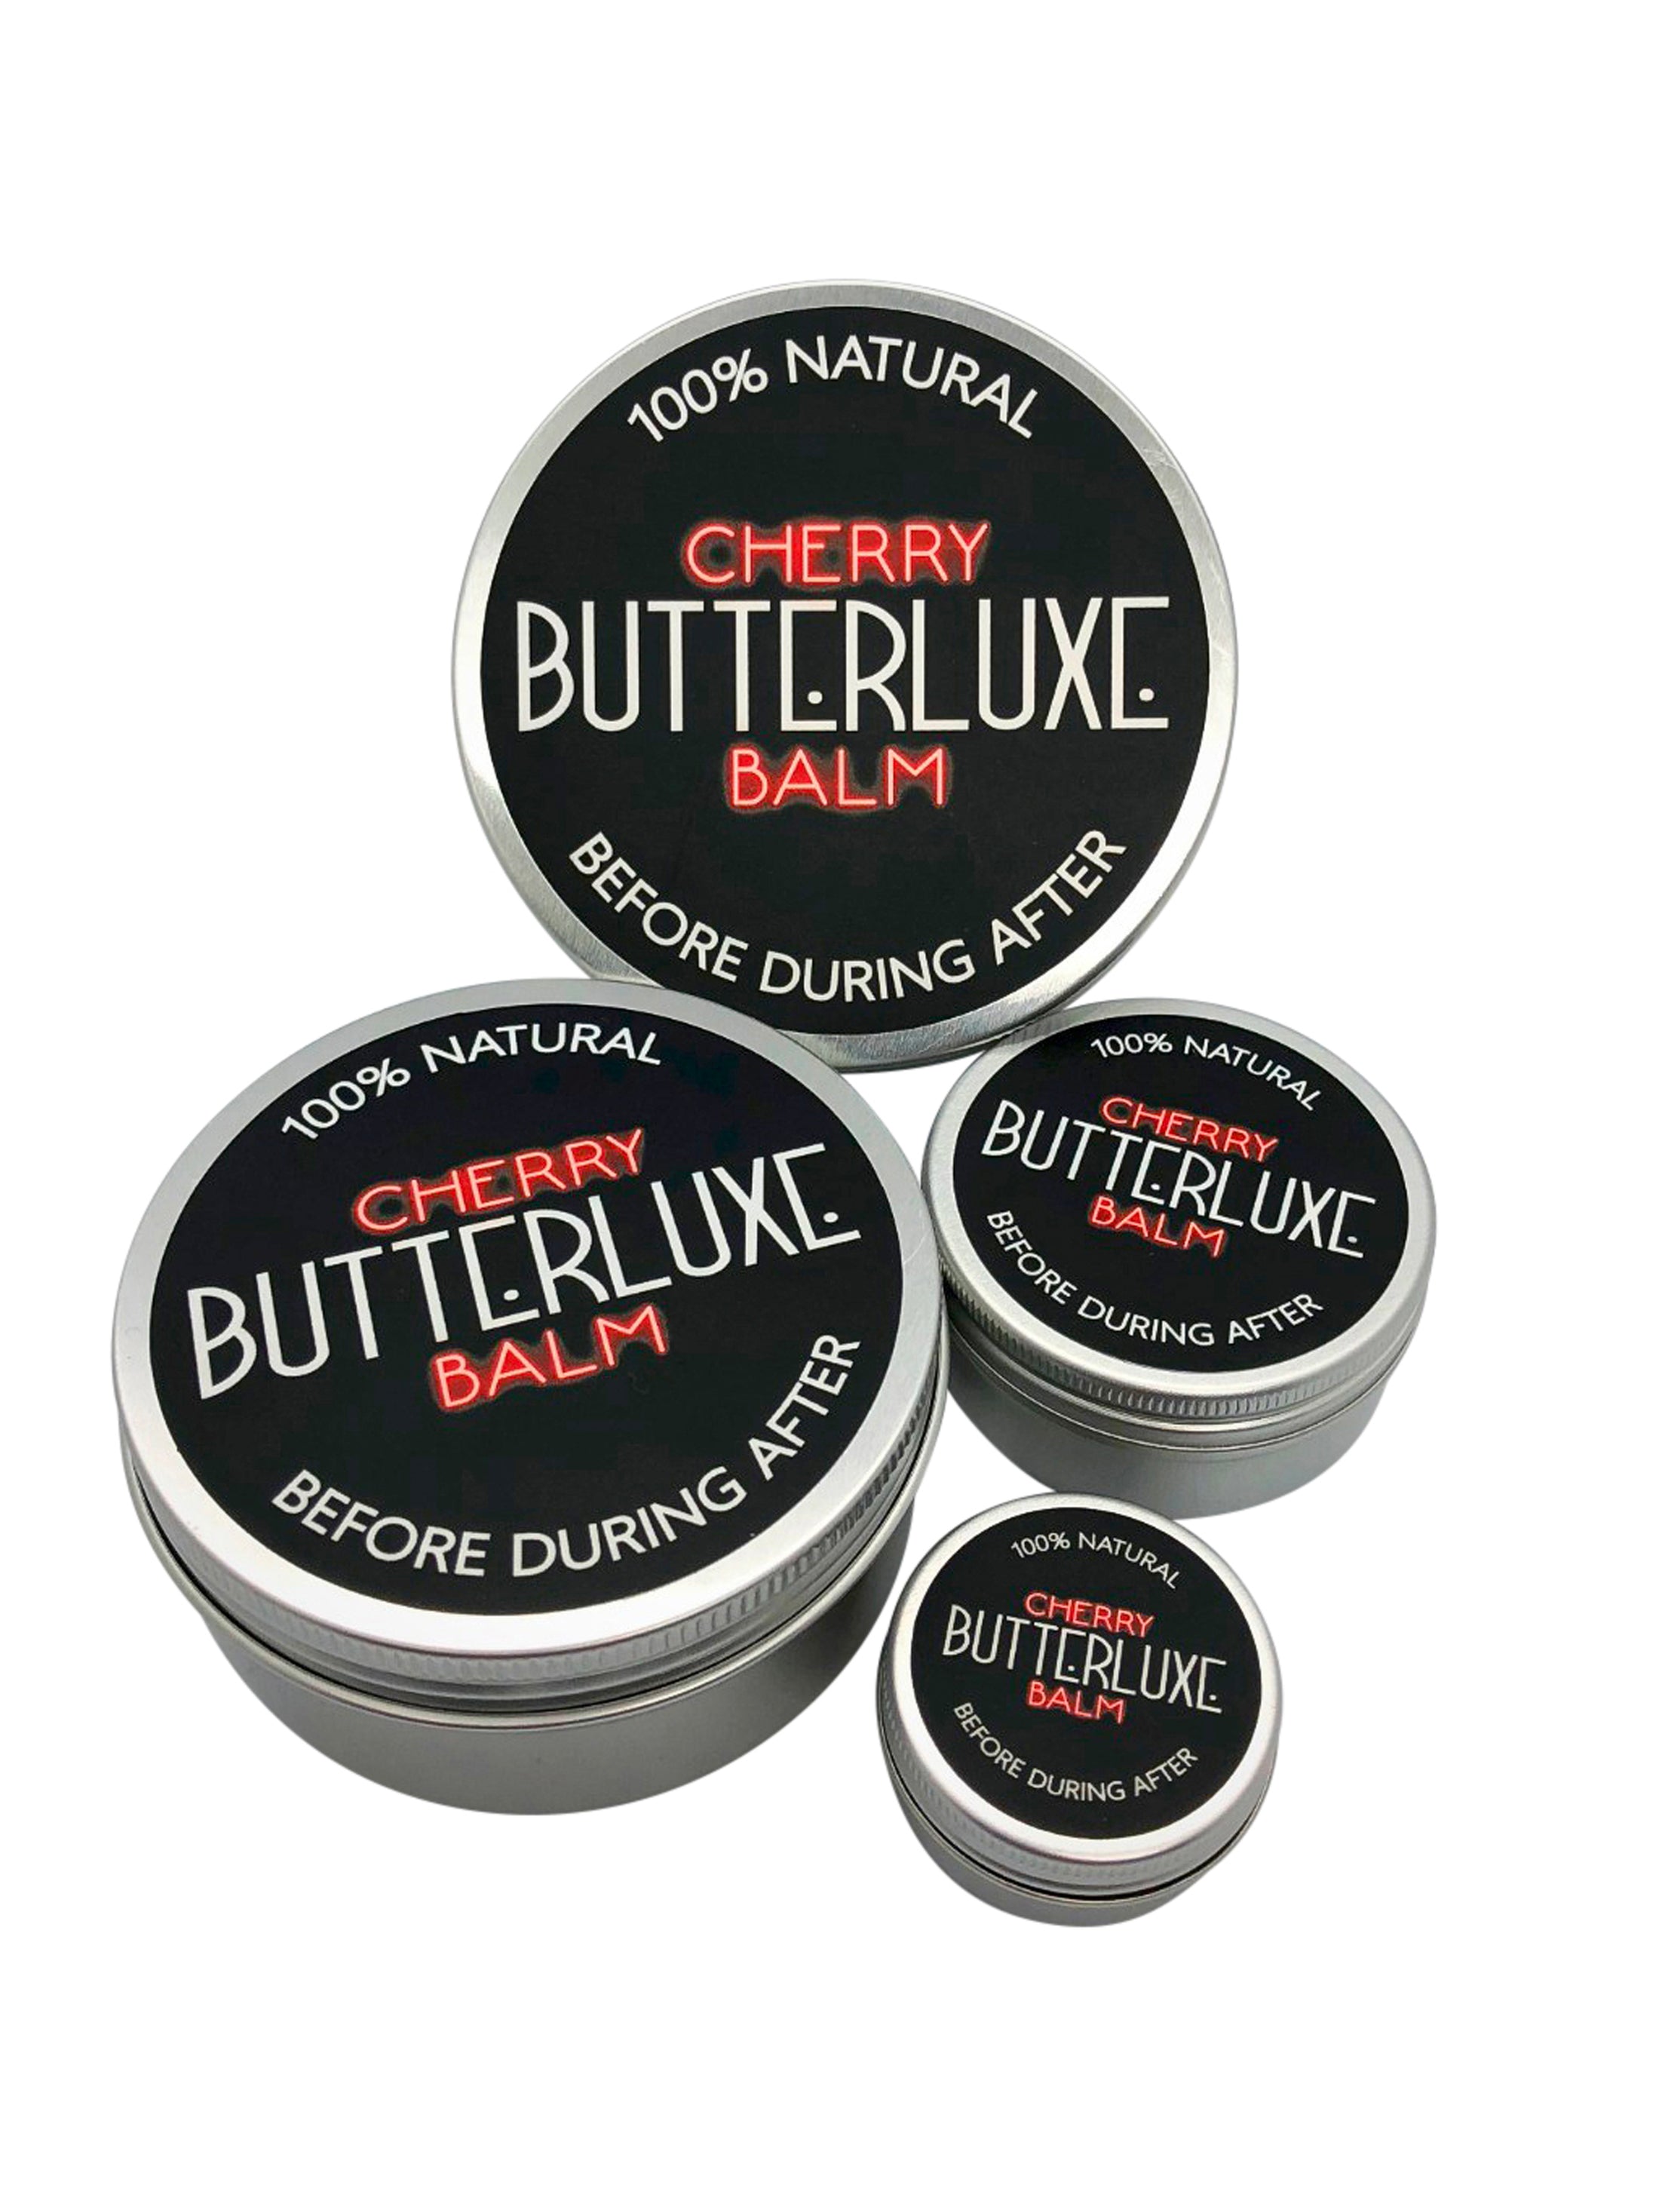 Butterluxe - Original Balm